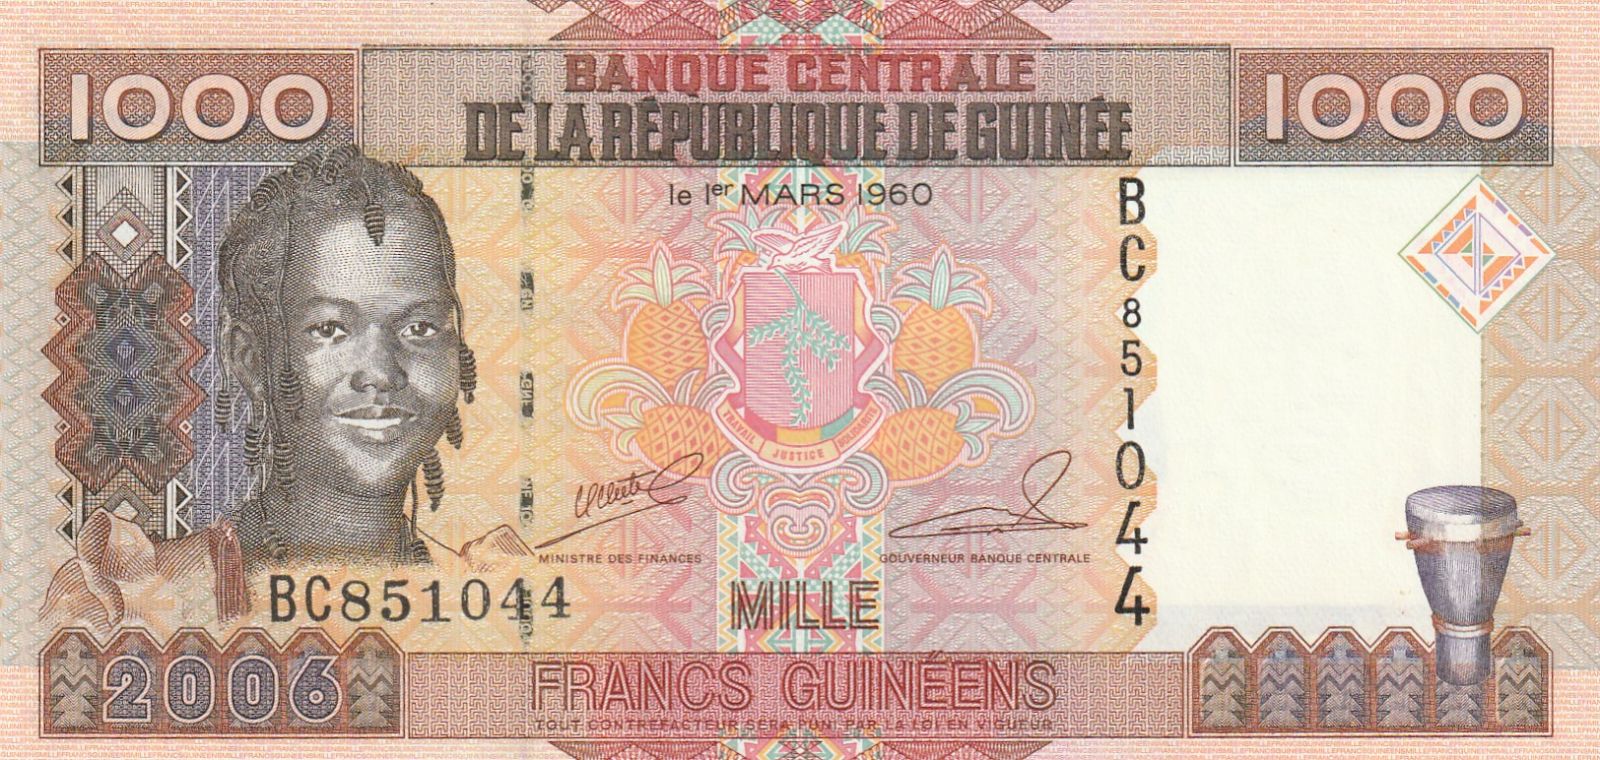 1000 Franc, Guinea, 2006